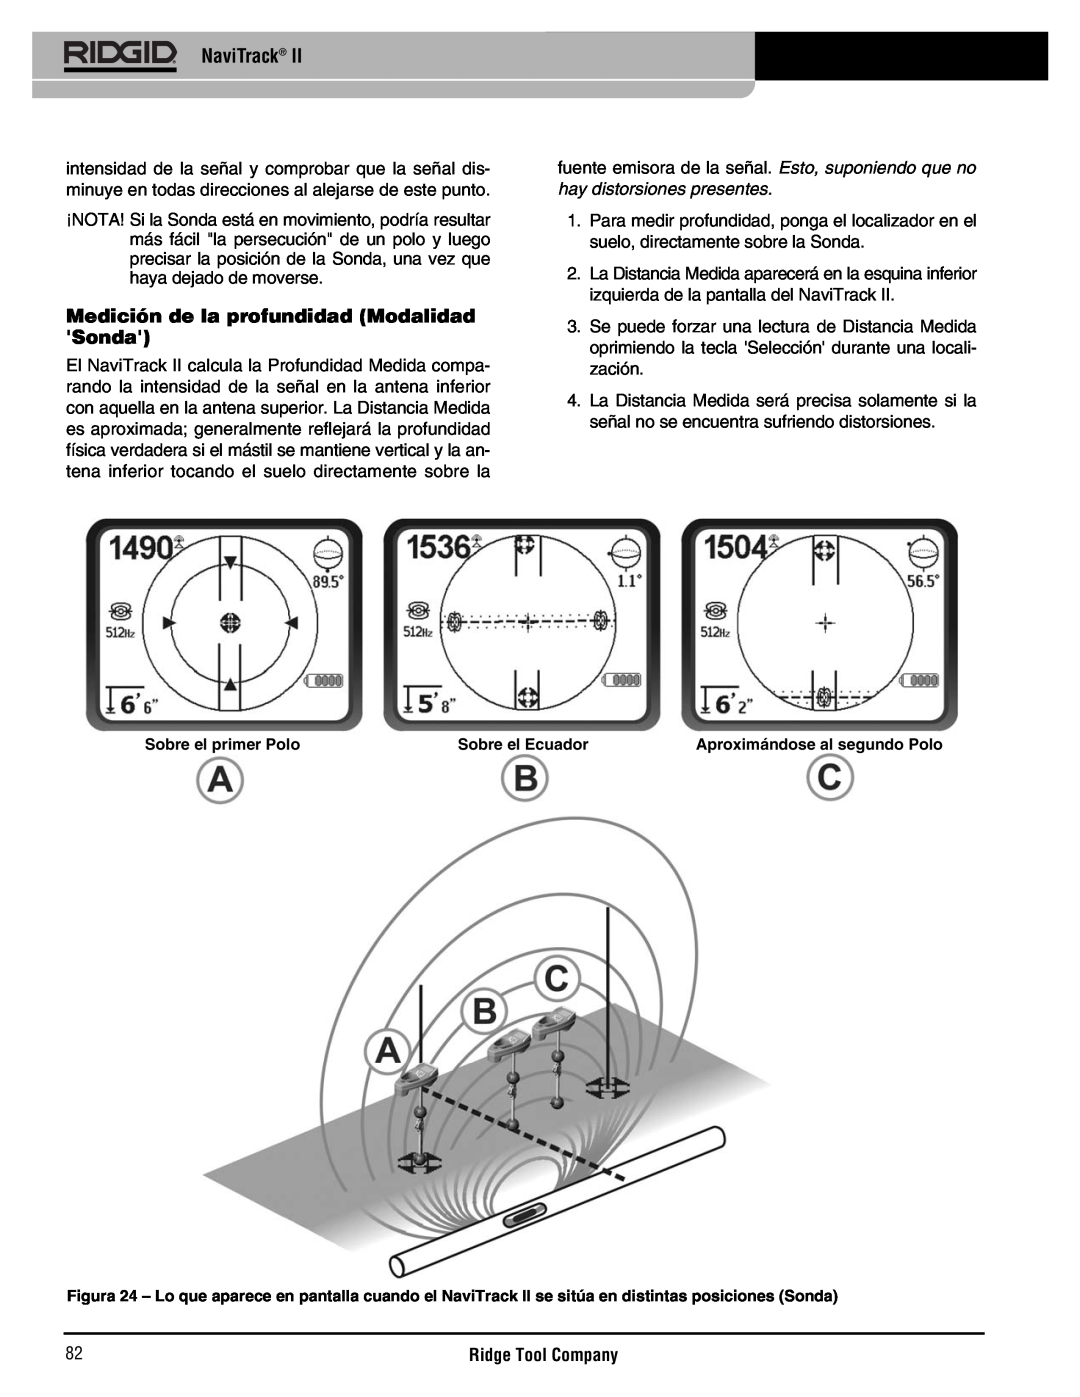 RIDGID Metal Detector manual Medición de la profundidad Modalidad Sonda, NaviTrack, Sobre el primer Polo, Sobre el Ecuador 